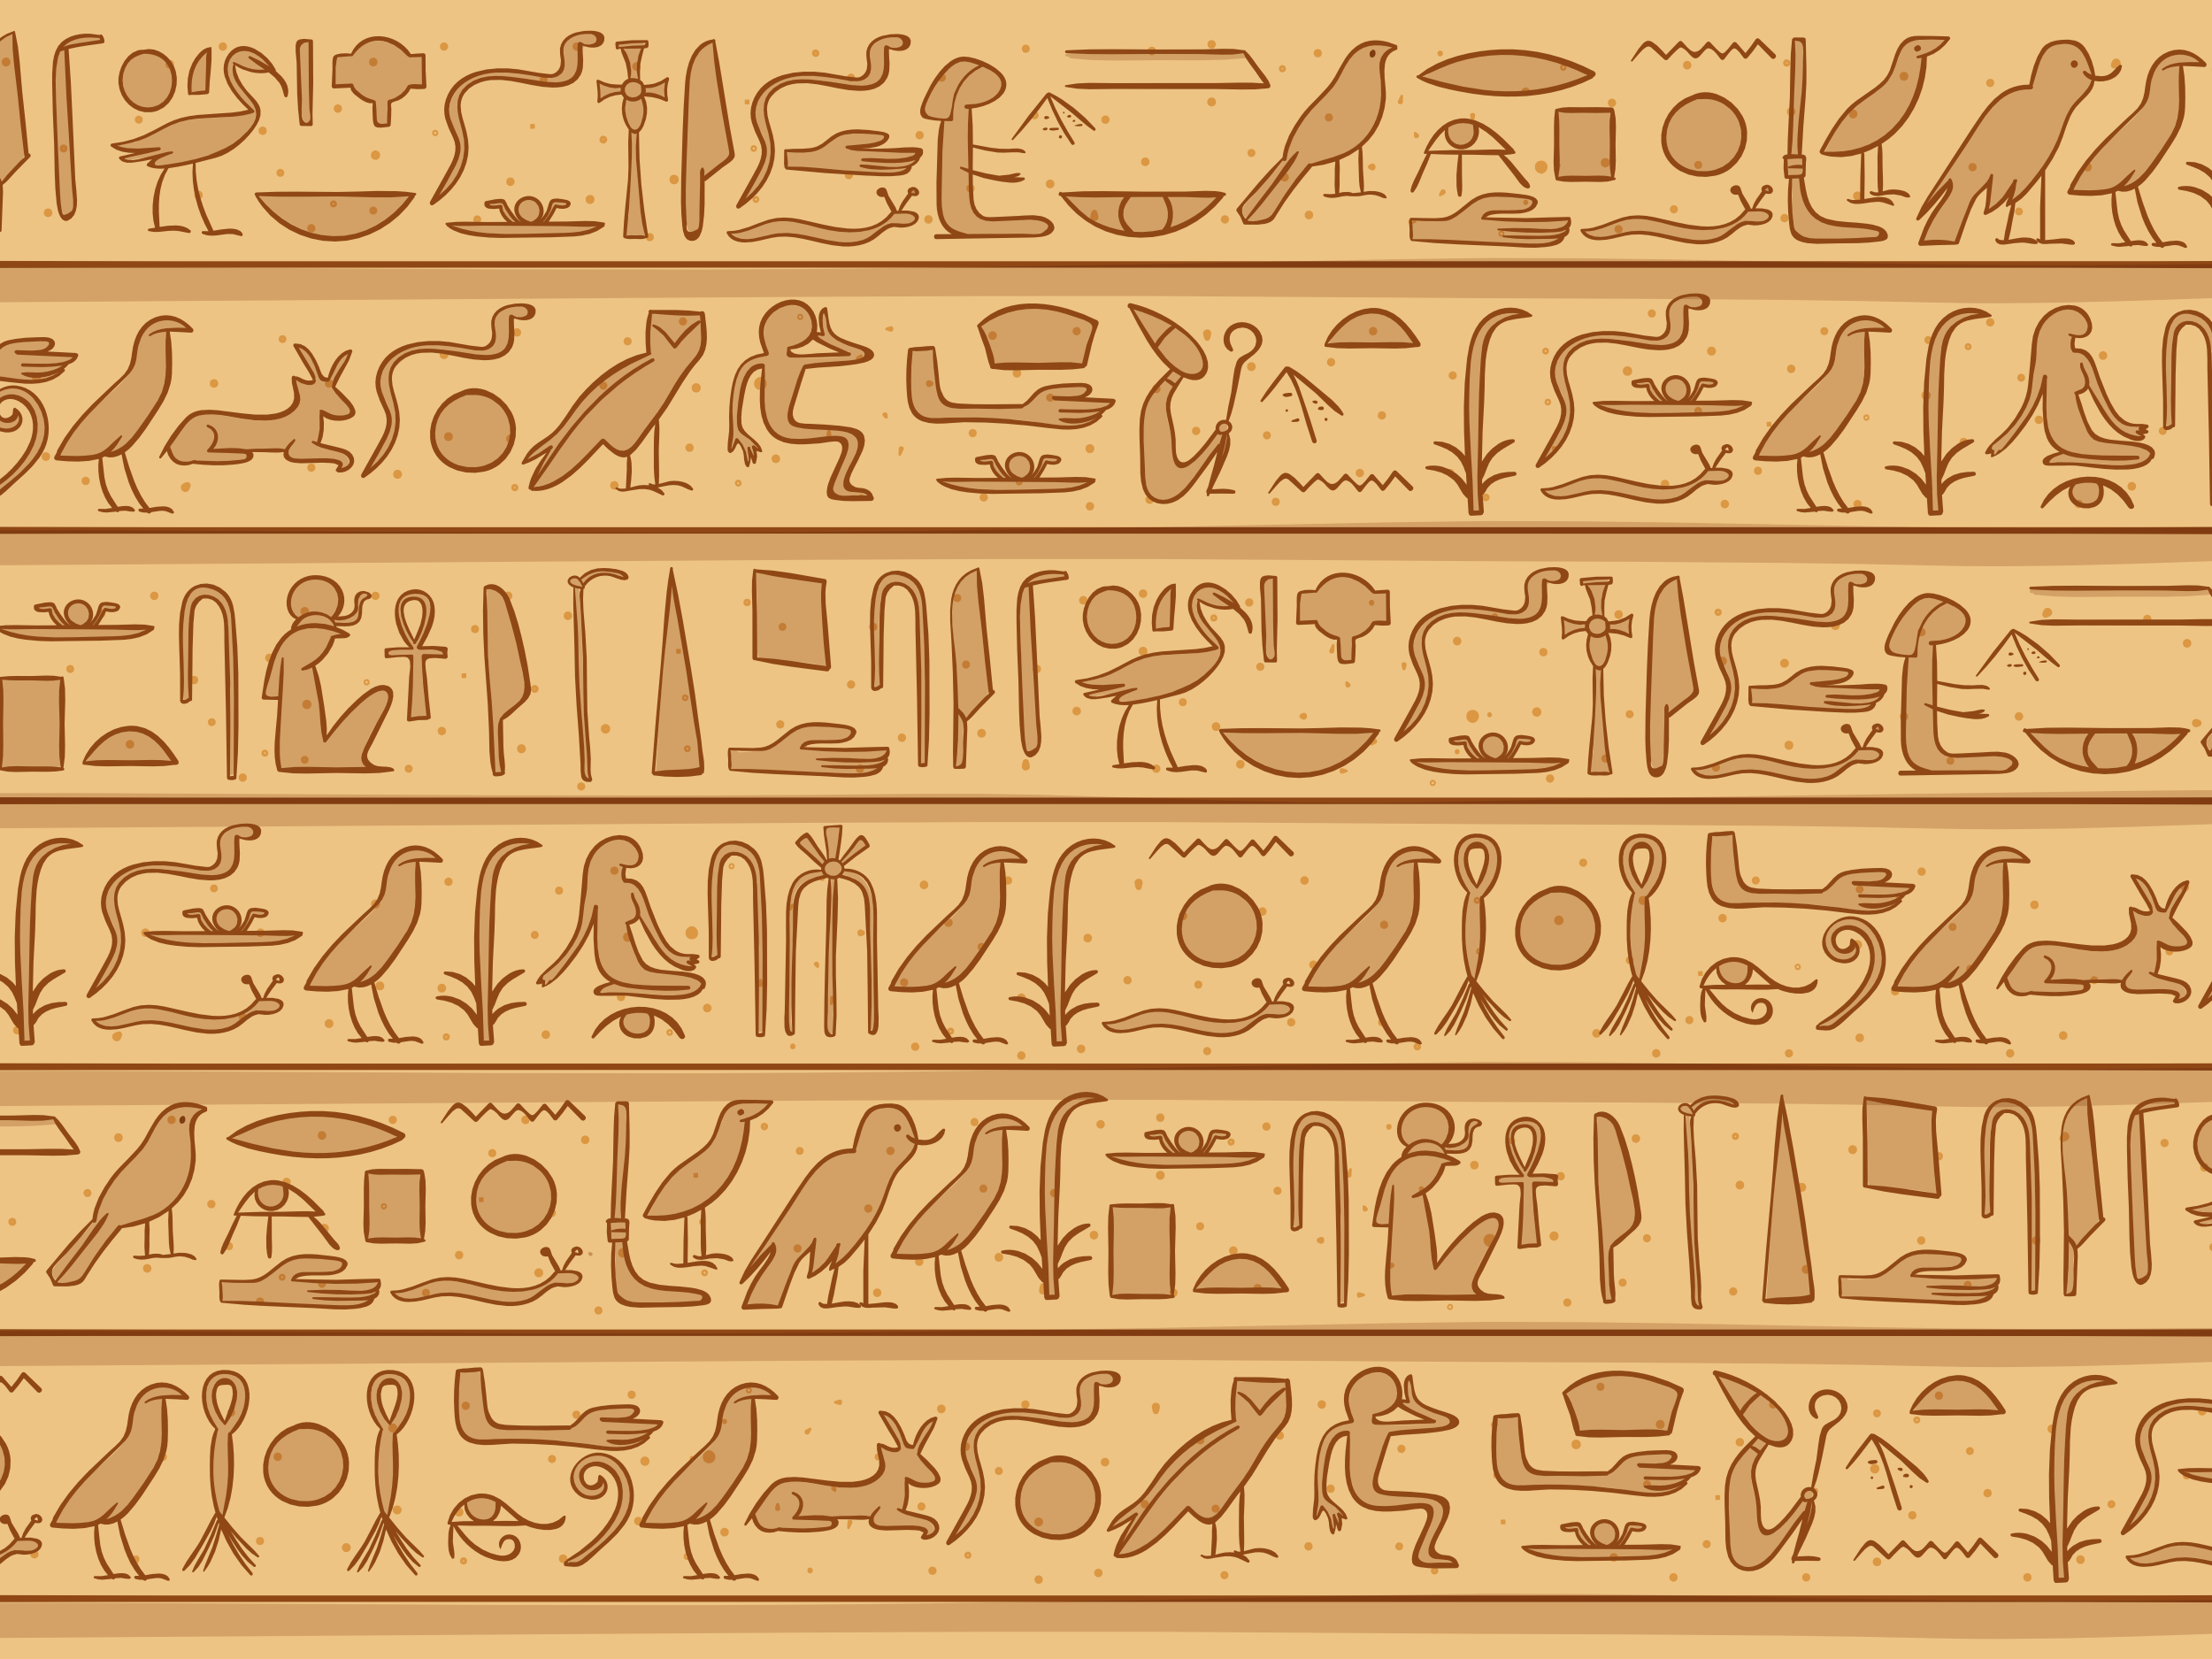 Das Geheimnis der Hieroglyphen | Doku ARTE